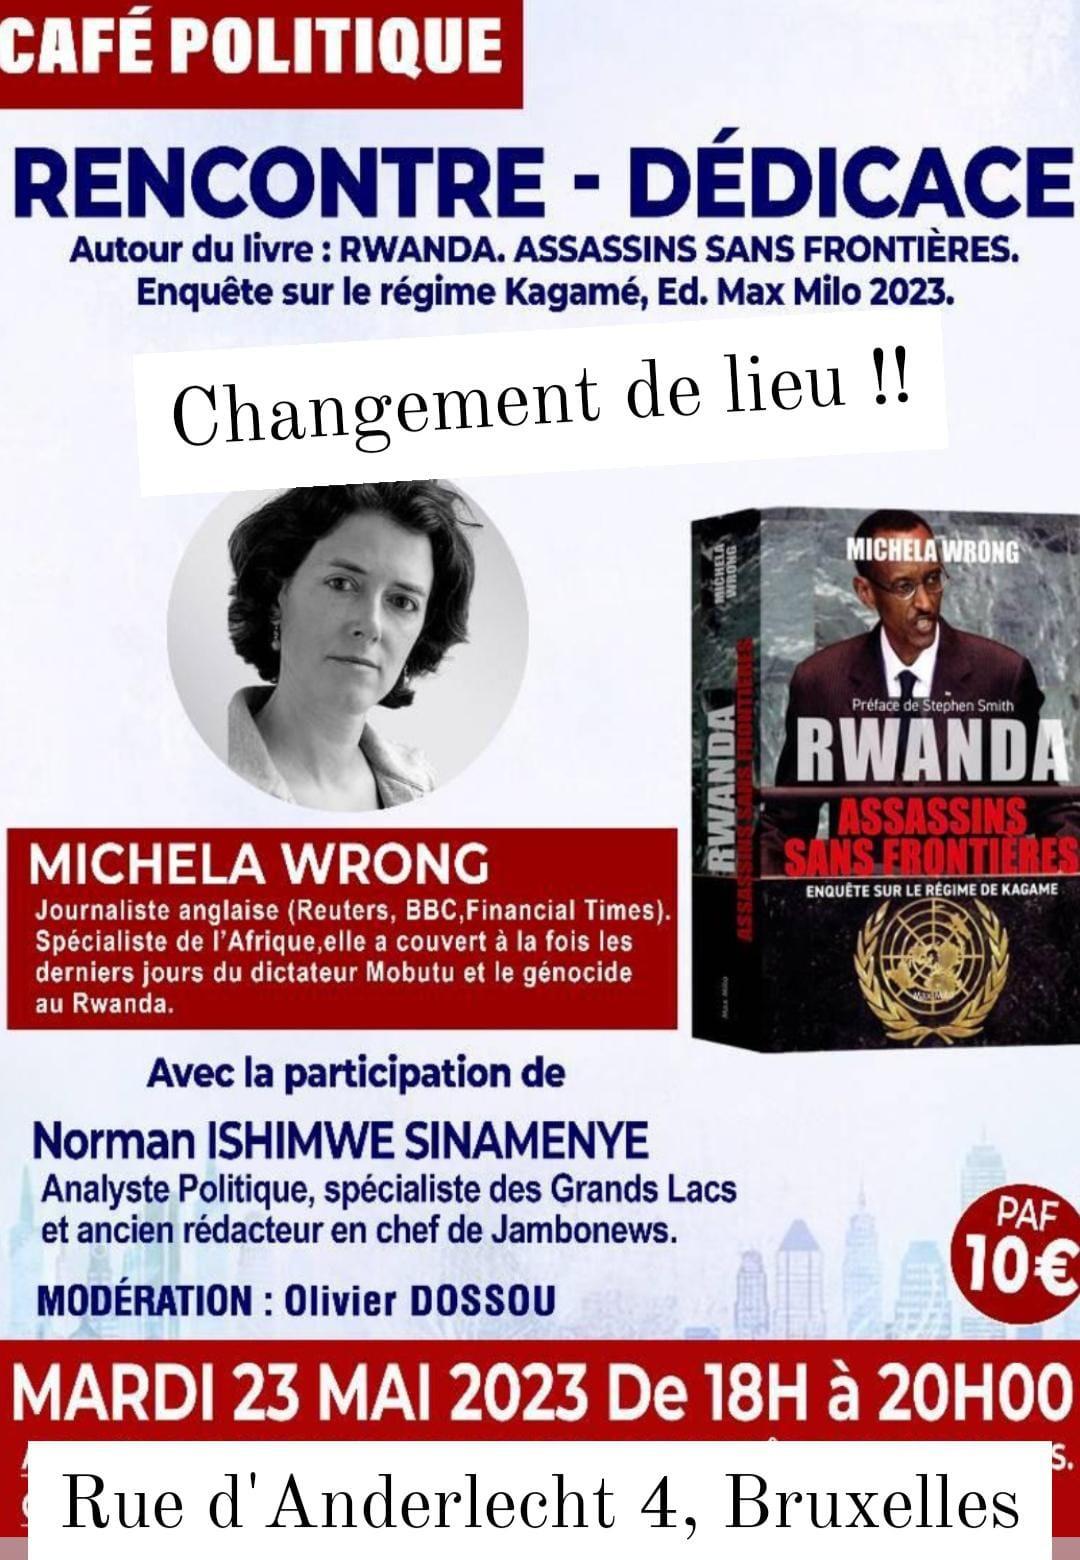 Michela Wrong dénonce le régime Kagame à Bruxelles